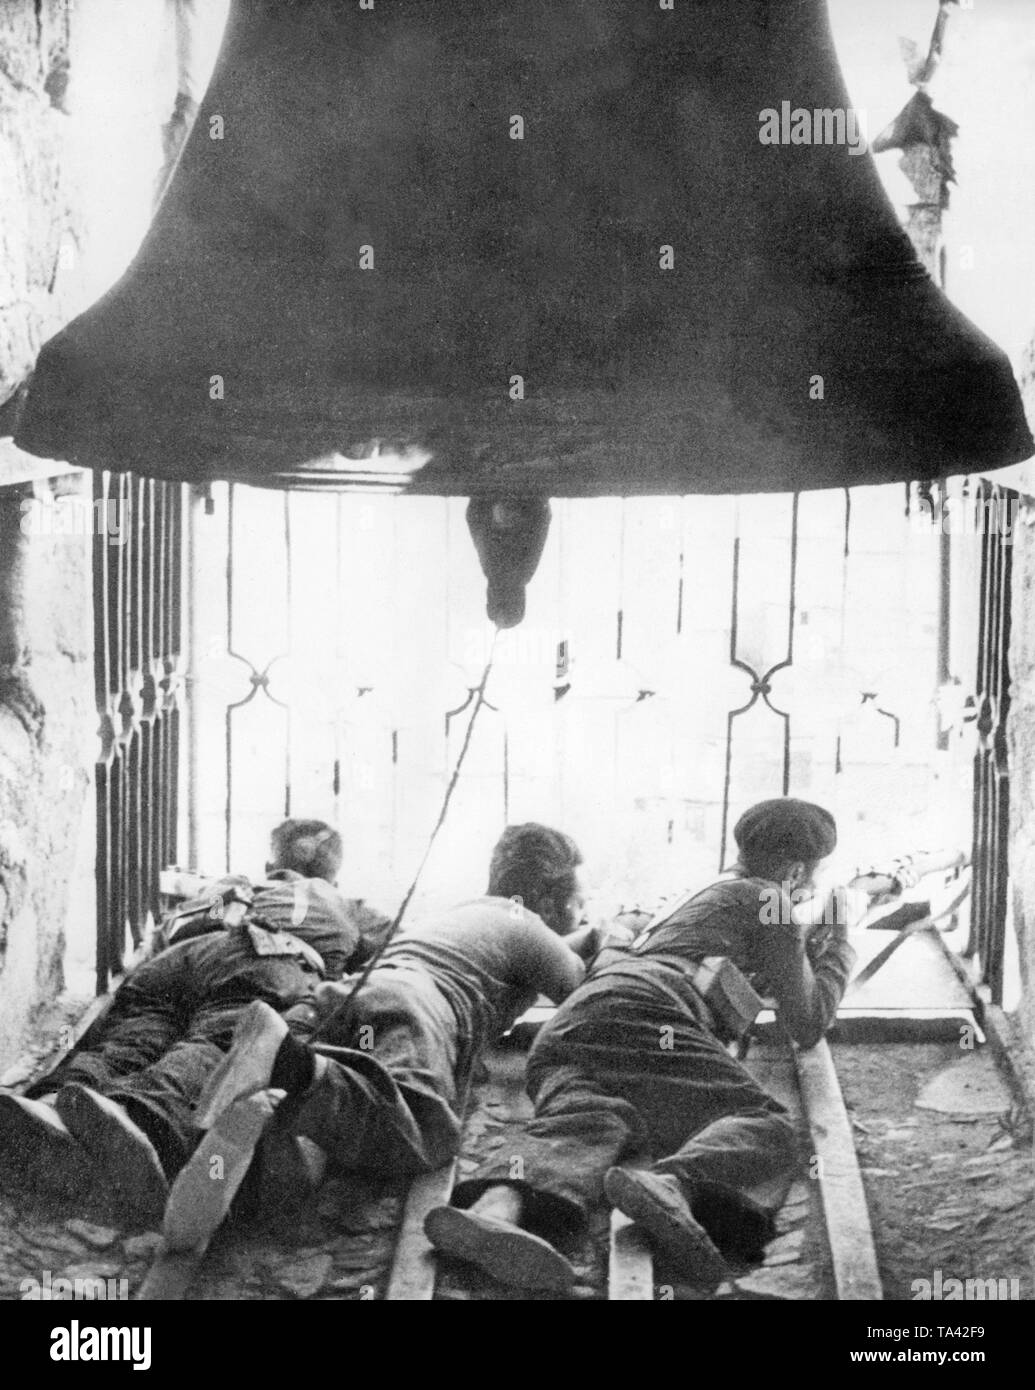 Foto von drei Republikanischen Scharfschützen im August 1936. Die Kämpfer sind Aufnahmen aus einem Fenster auf den Glockenturm der Kathedrale Siguenza, im Nordosten von Madrid. Sie liegen auf dem Boden. Über ihnen hängt die Glocke. Stockfoto